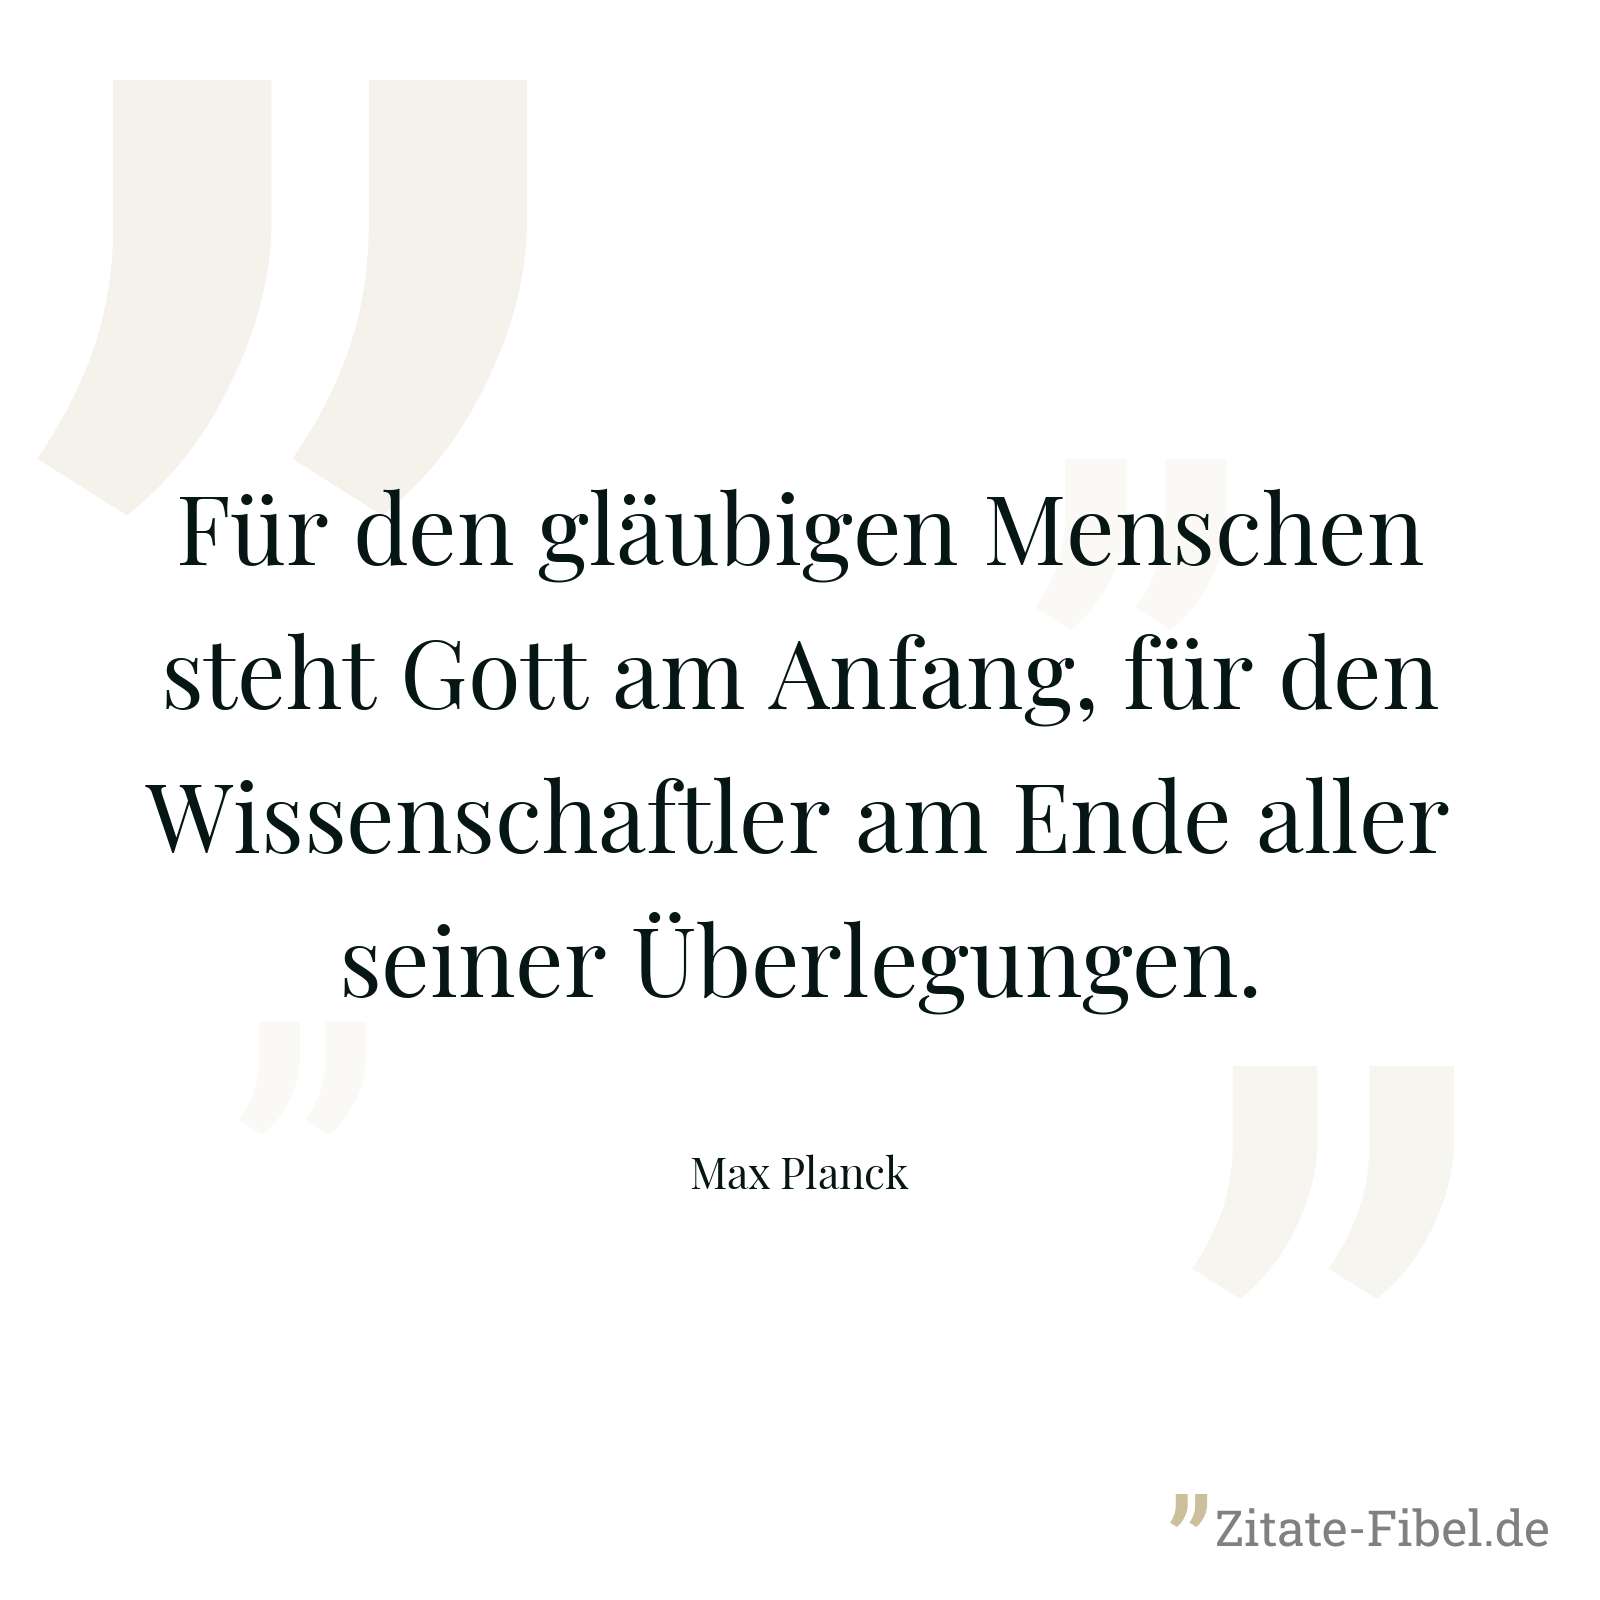 Für den gläubigen Menschen steht Gott am Anfang, für den Wissenschaftler am Ende aller seiner Überlegungen. - Max Planck